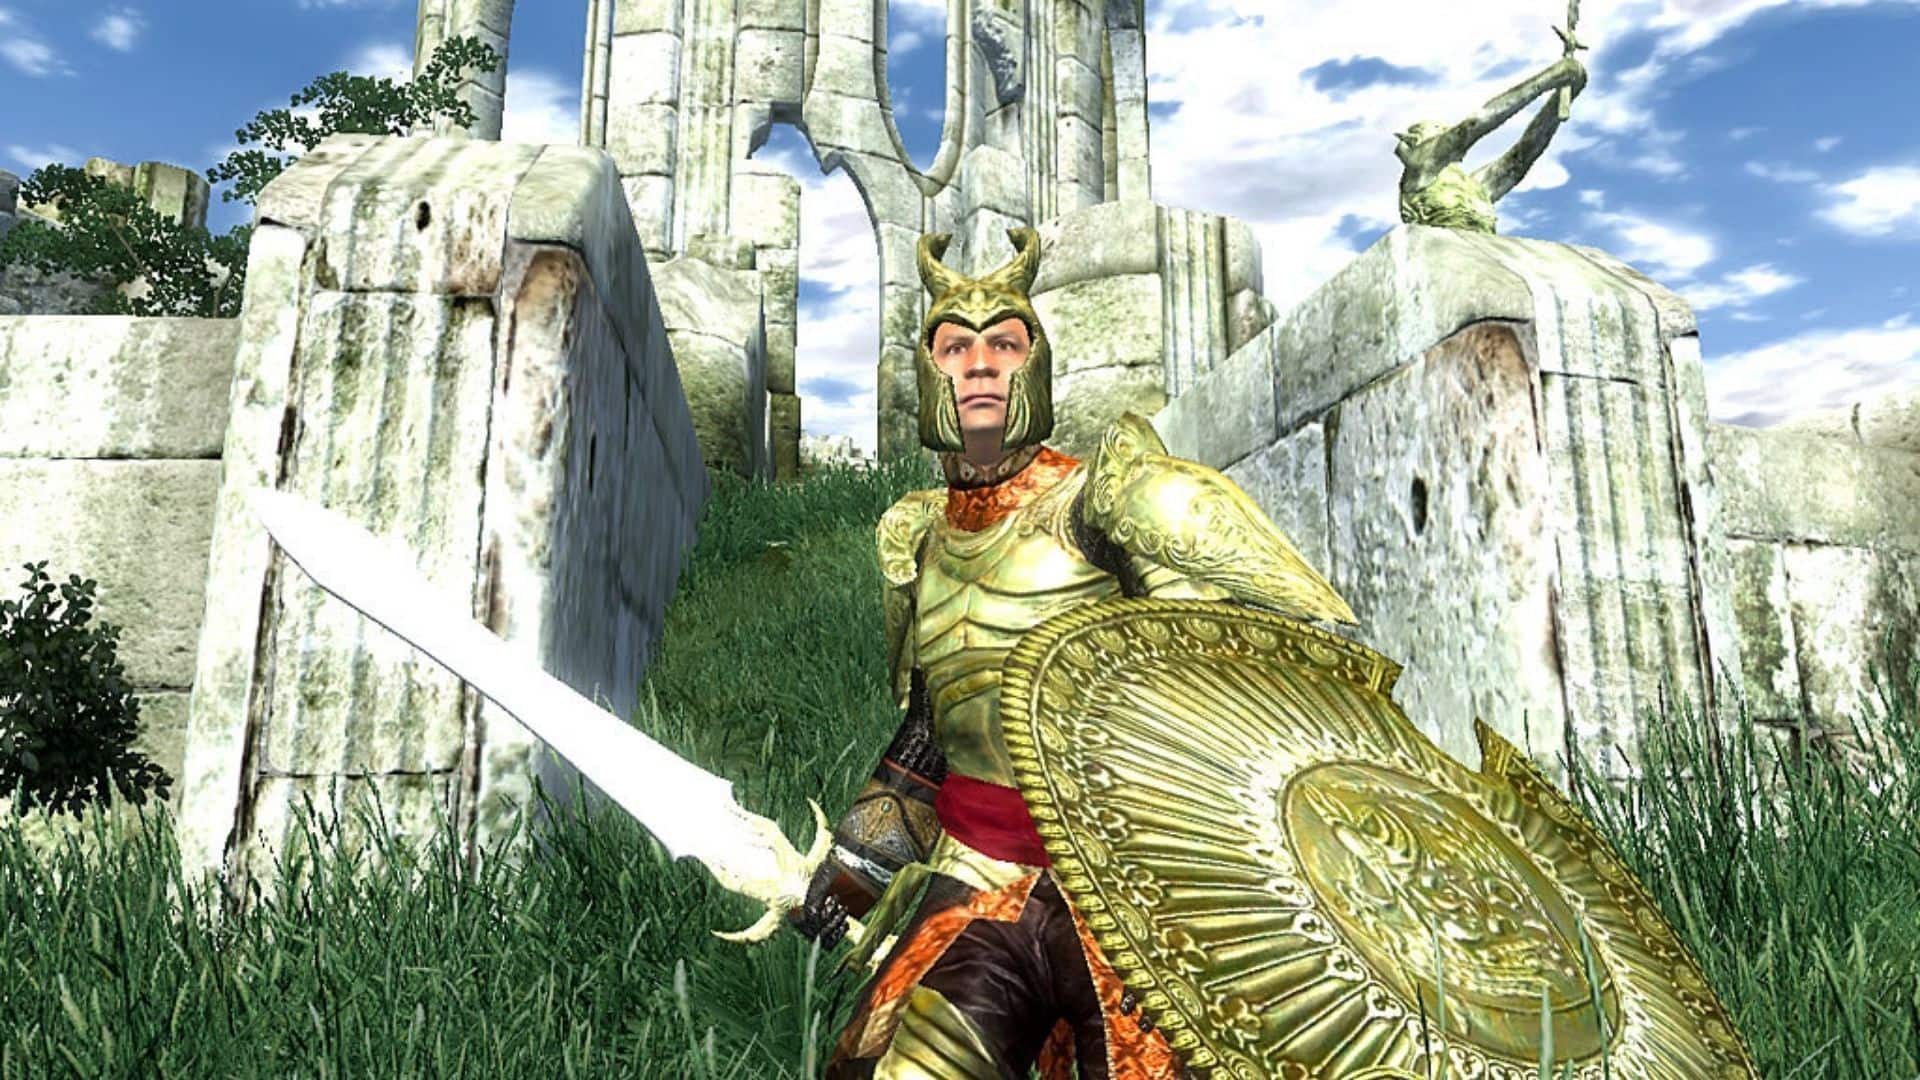 Prime Gaming's April Offerings Include Elder Scrolls IV: Oblivion